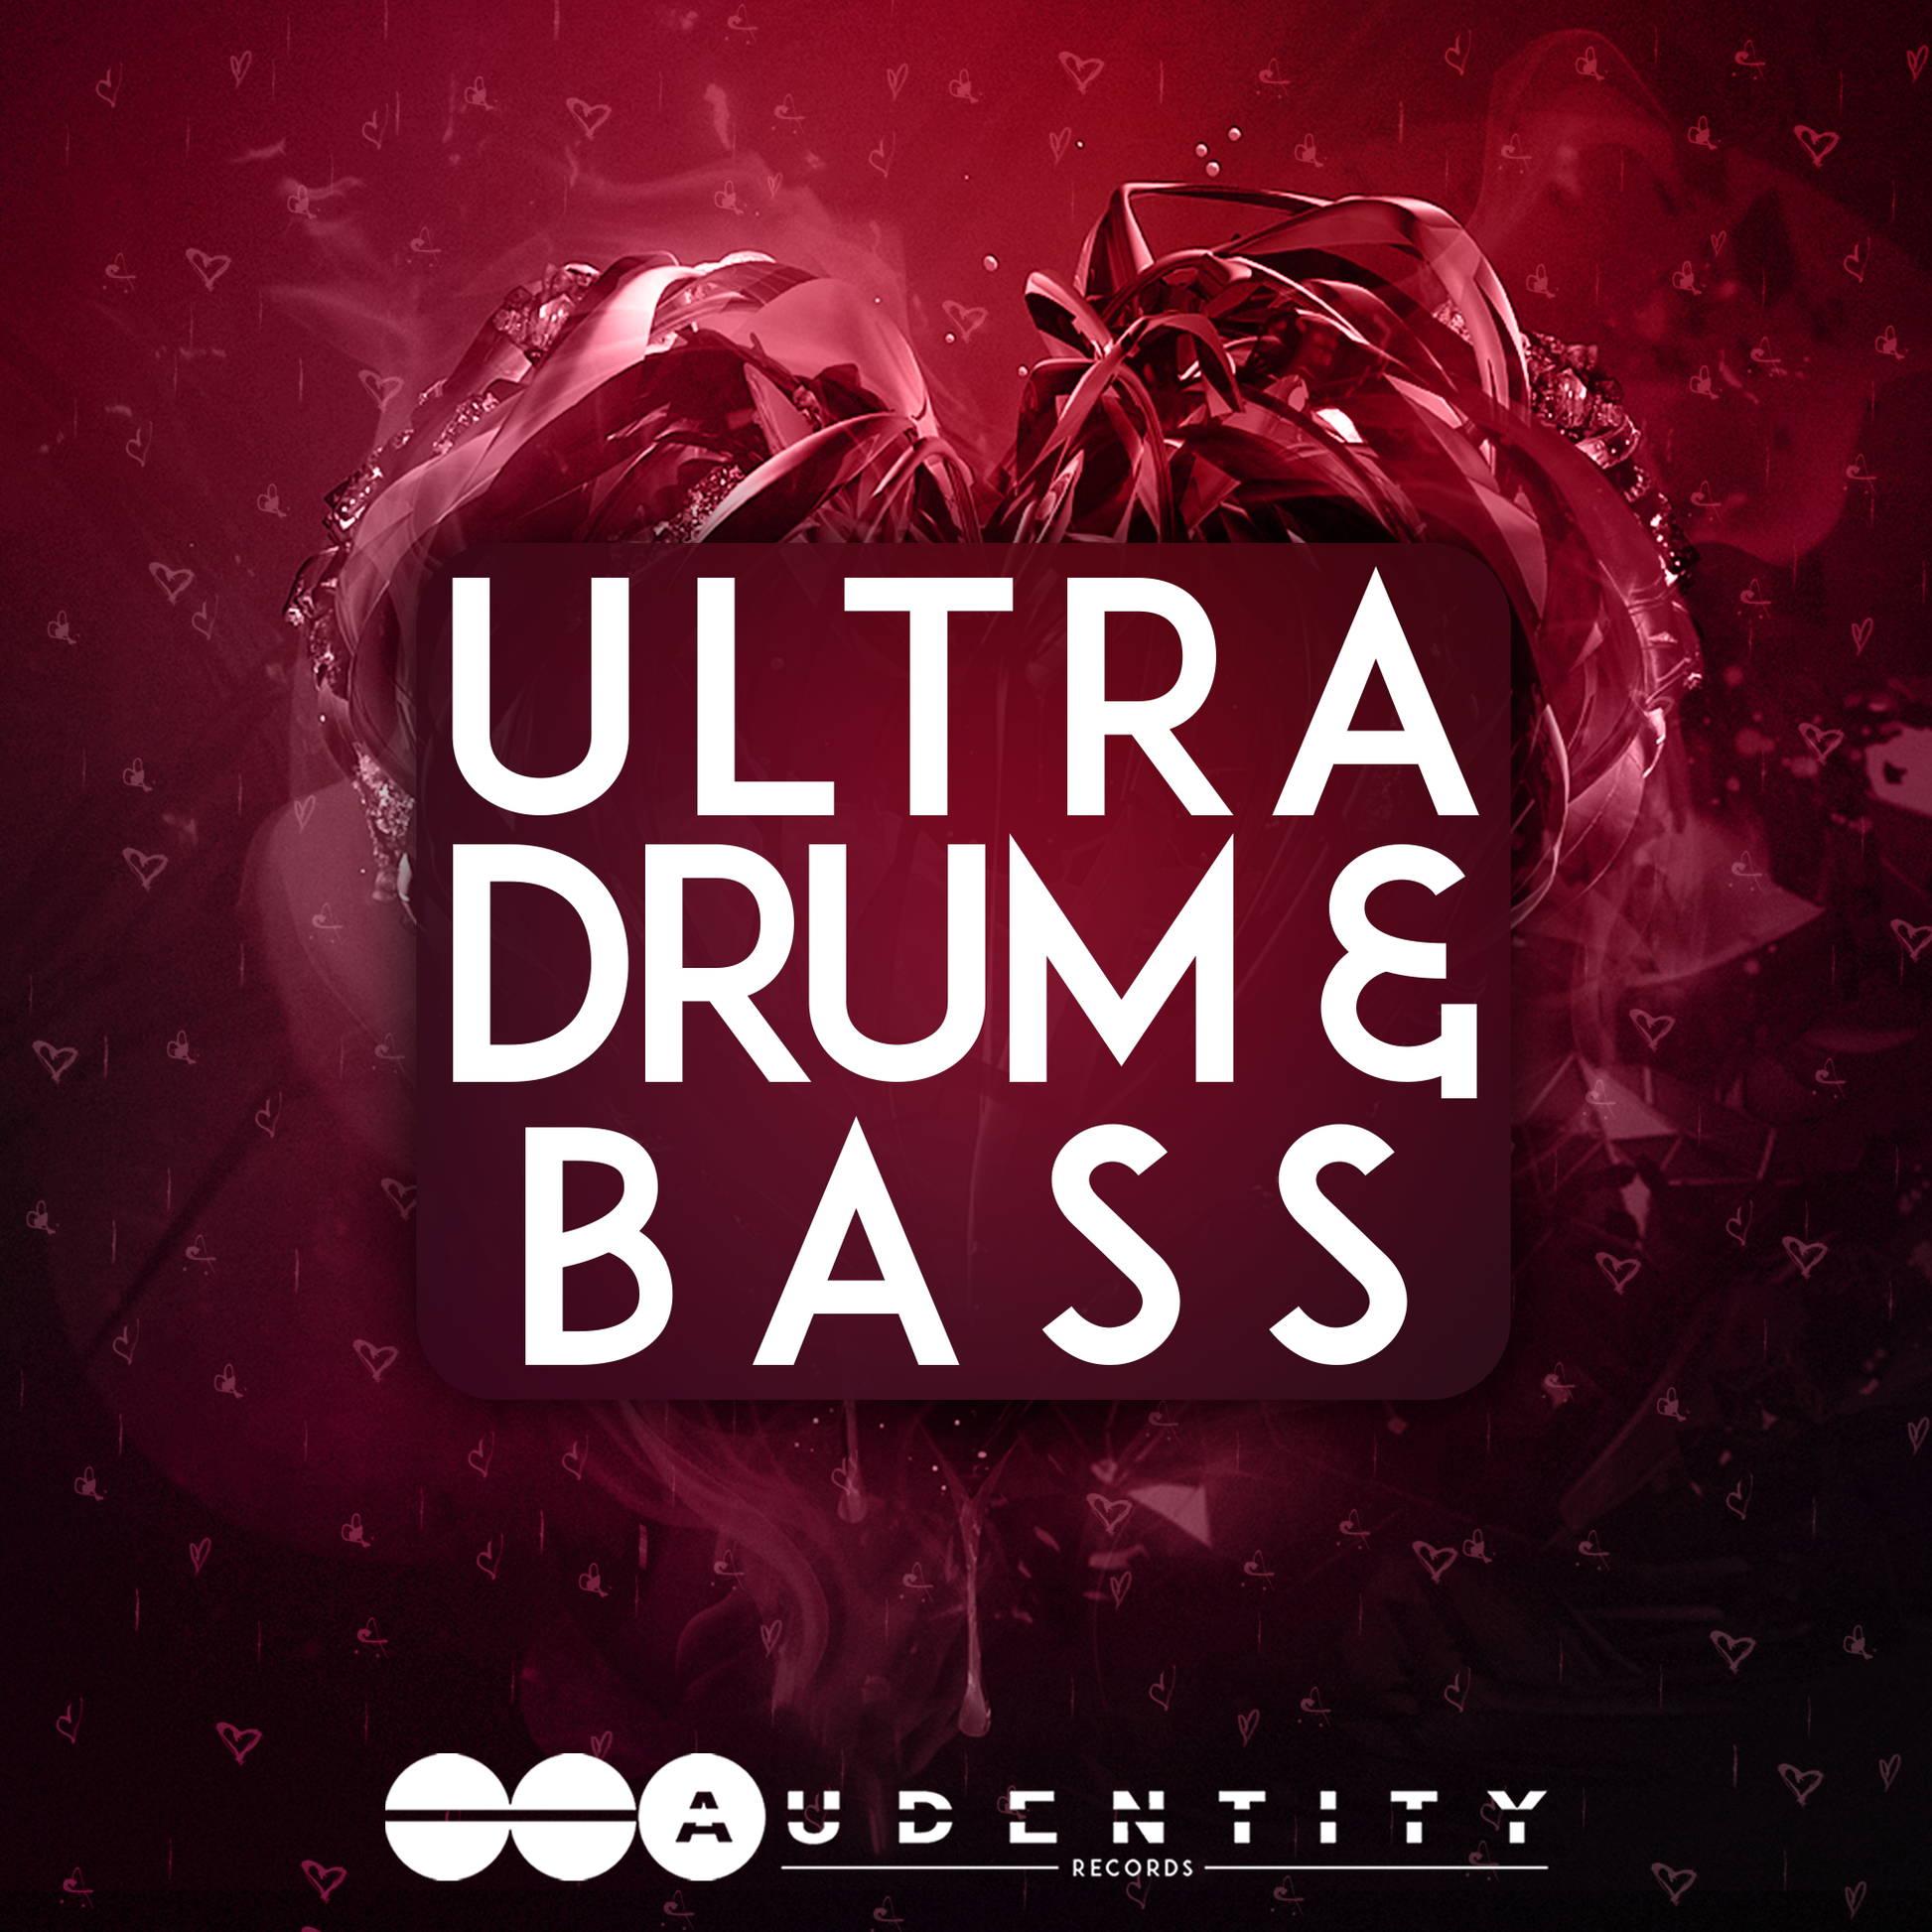 Ultra Drum & Bass